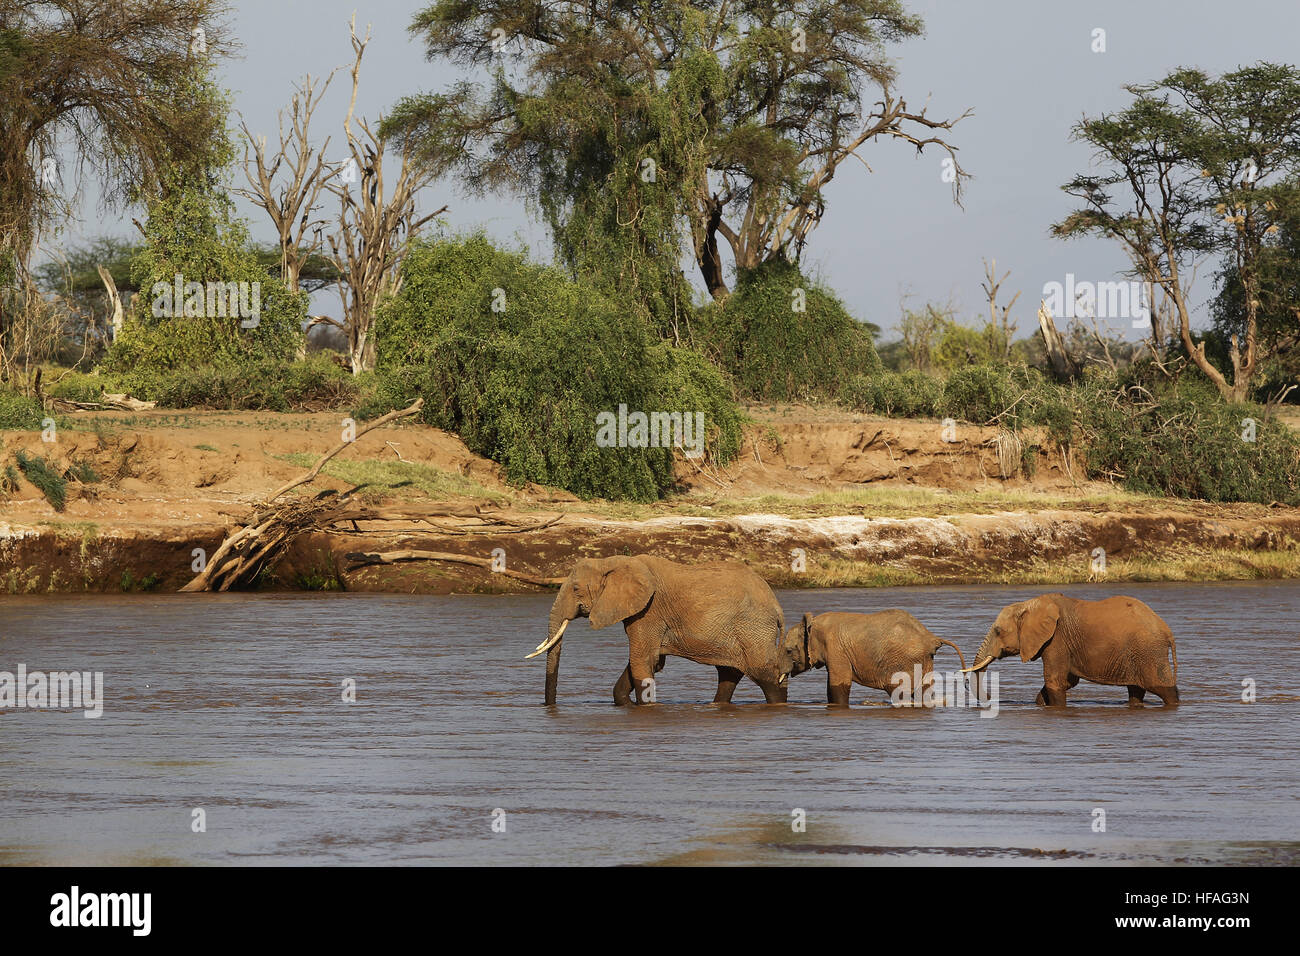 L'éléphant d'Afrique, Loxodonta africana, mère et les veaux, la rivière traversant le parc de Samburu au Kenya Banque D'Images